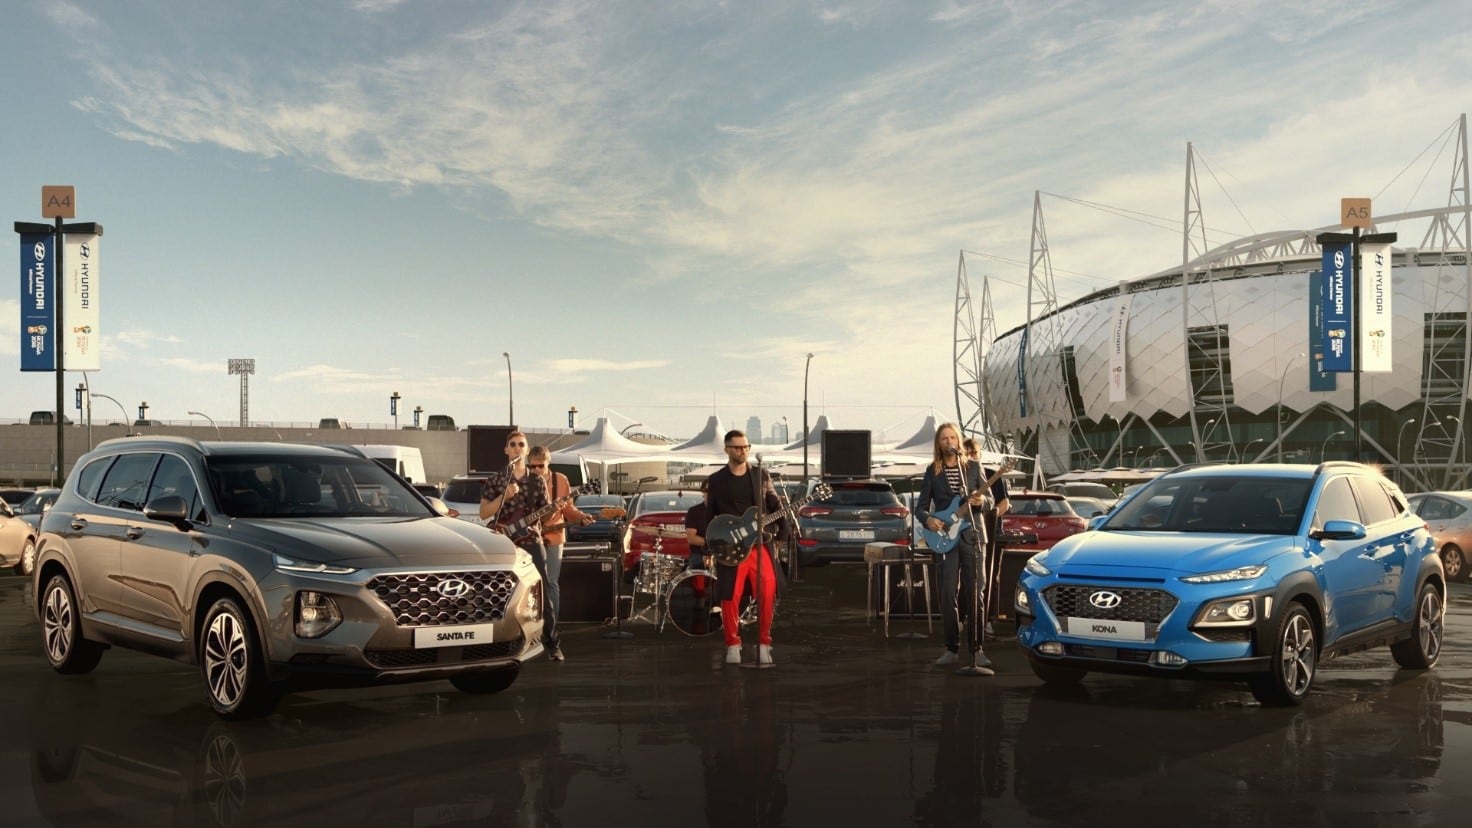 Hyundai и Maroon 5 представляют гимн рекламной кампании бренда, посвященной Чемпионату мира по футболу FIFA 2018™